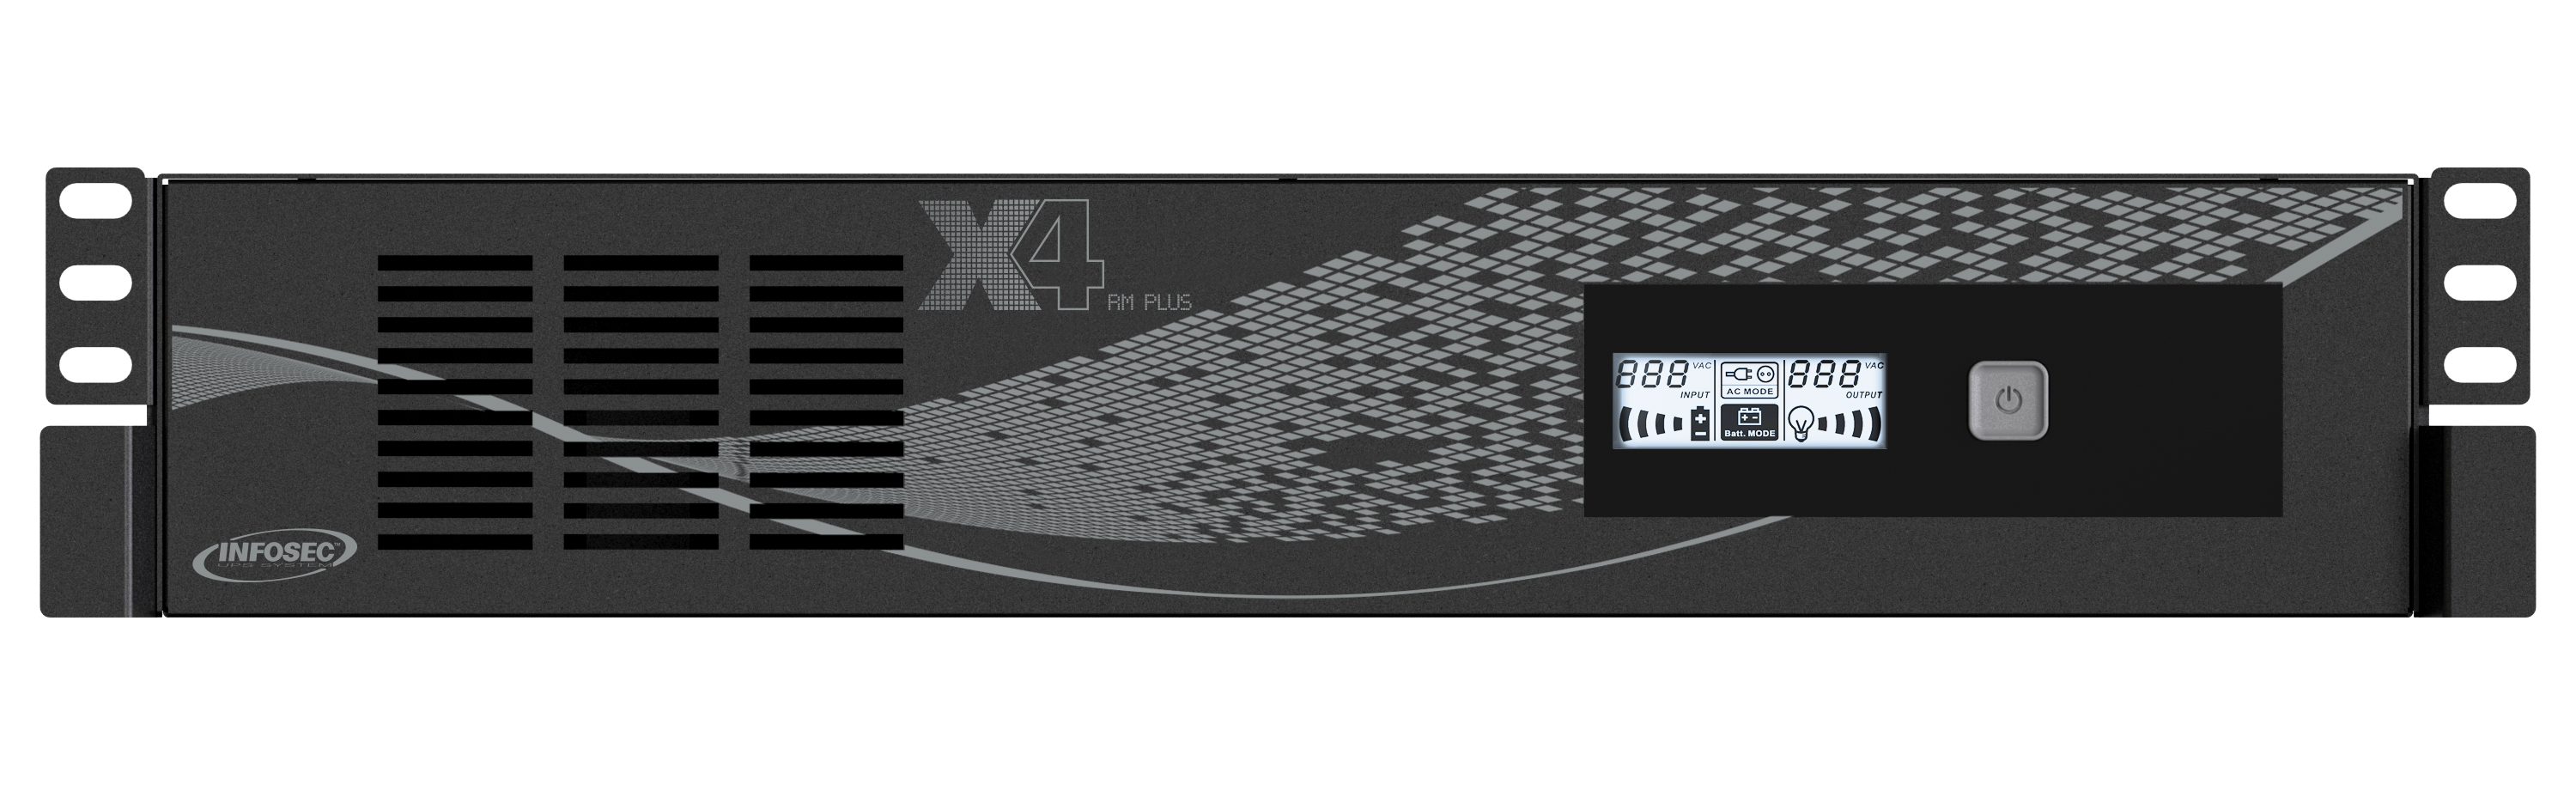 X4 3000 RM Plus-Onduleur Line Interactive 3000VA 8 Prises IEC-2 prises